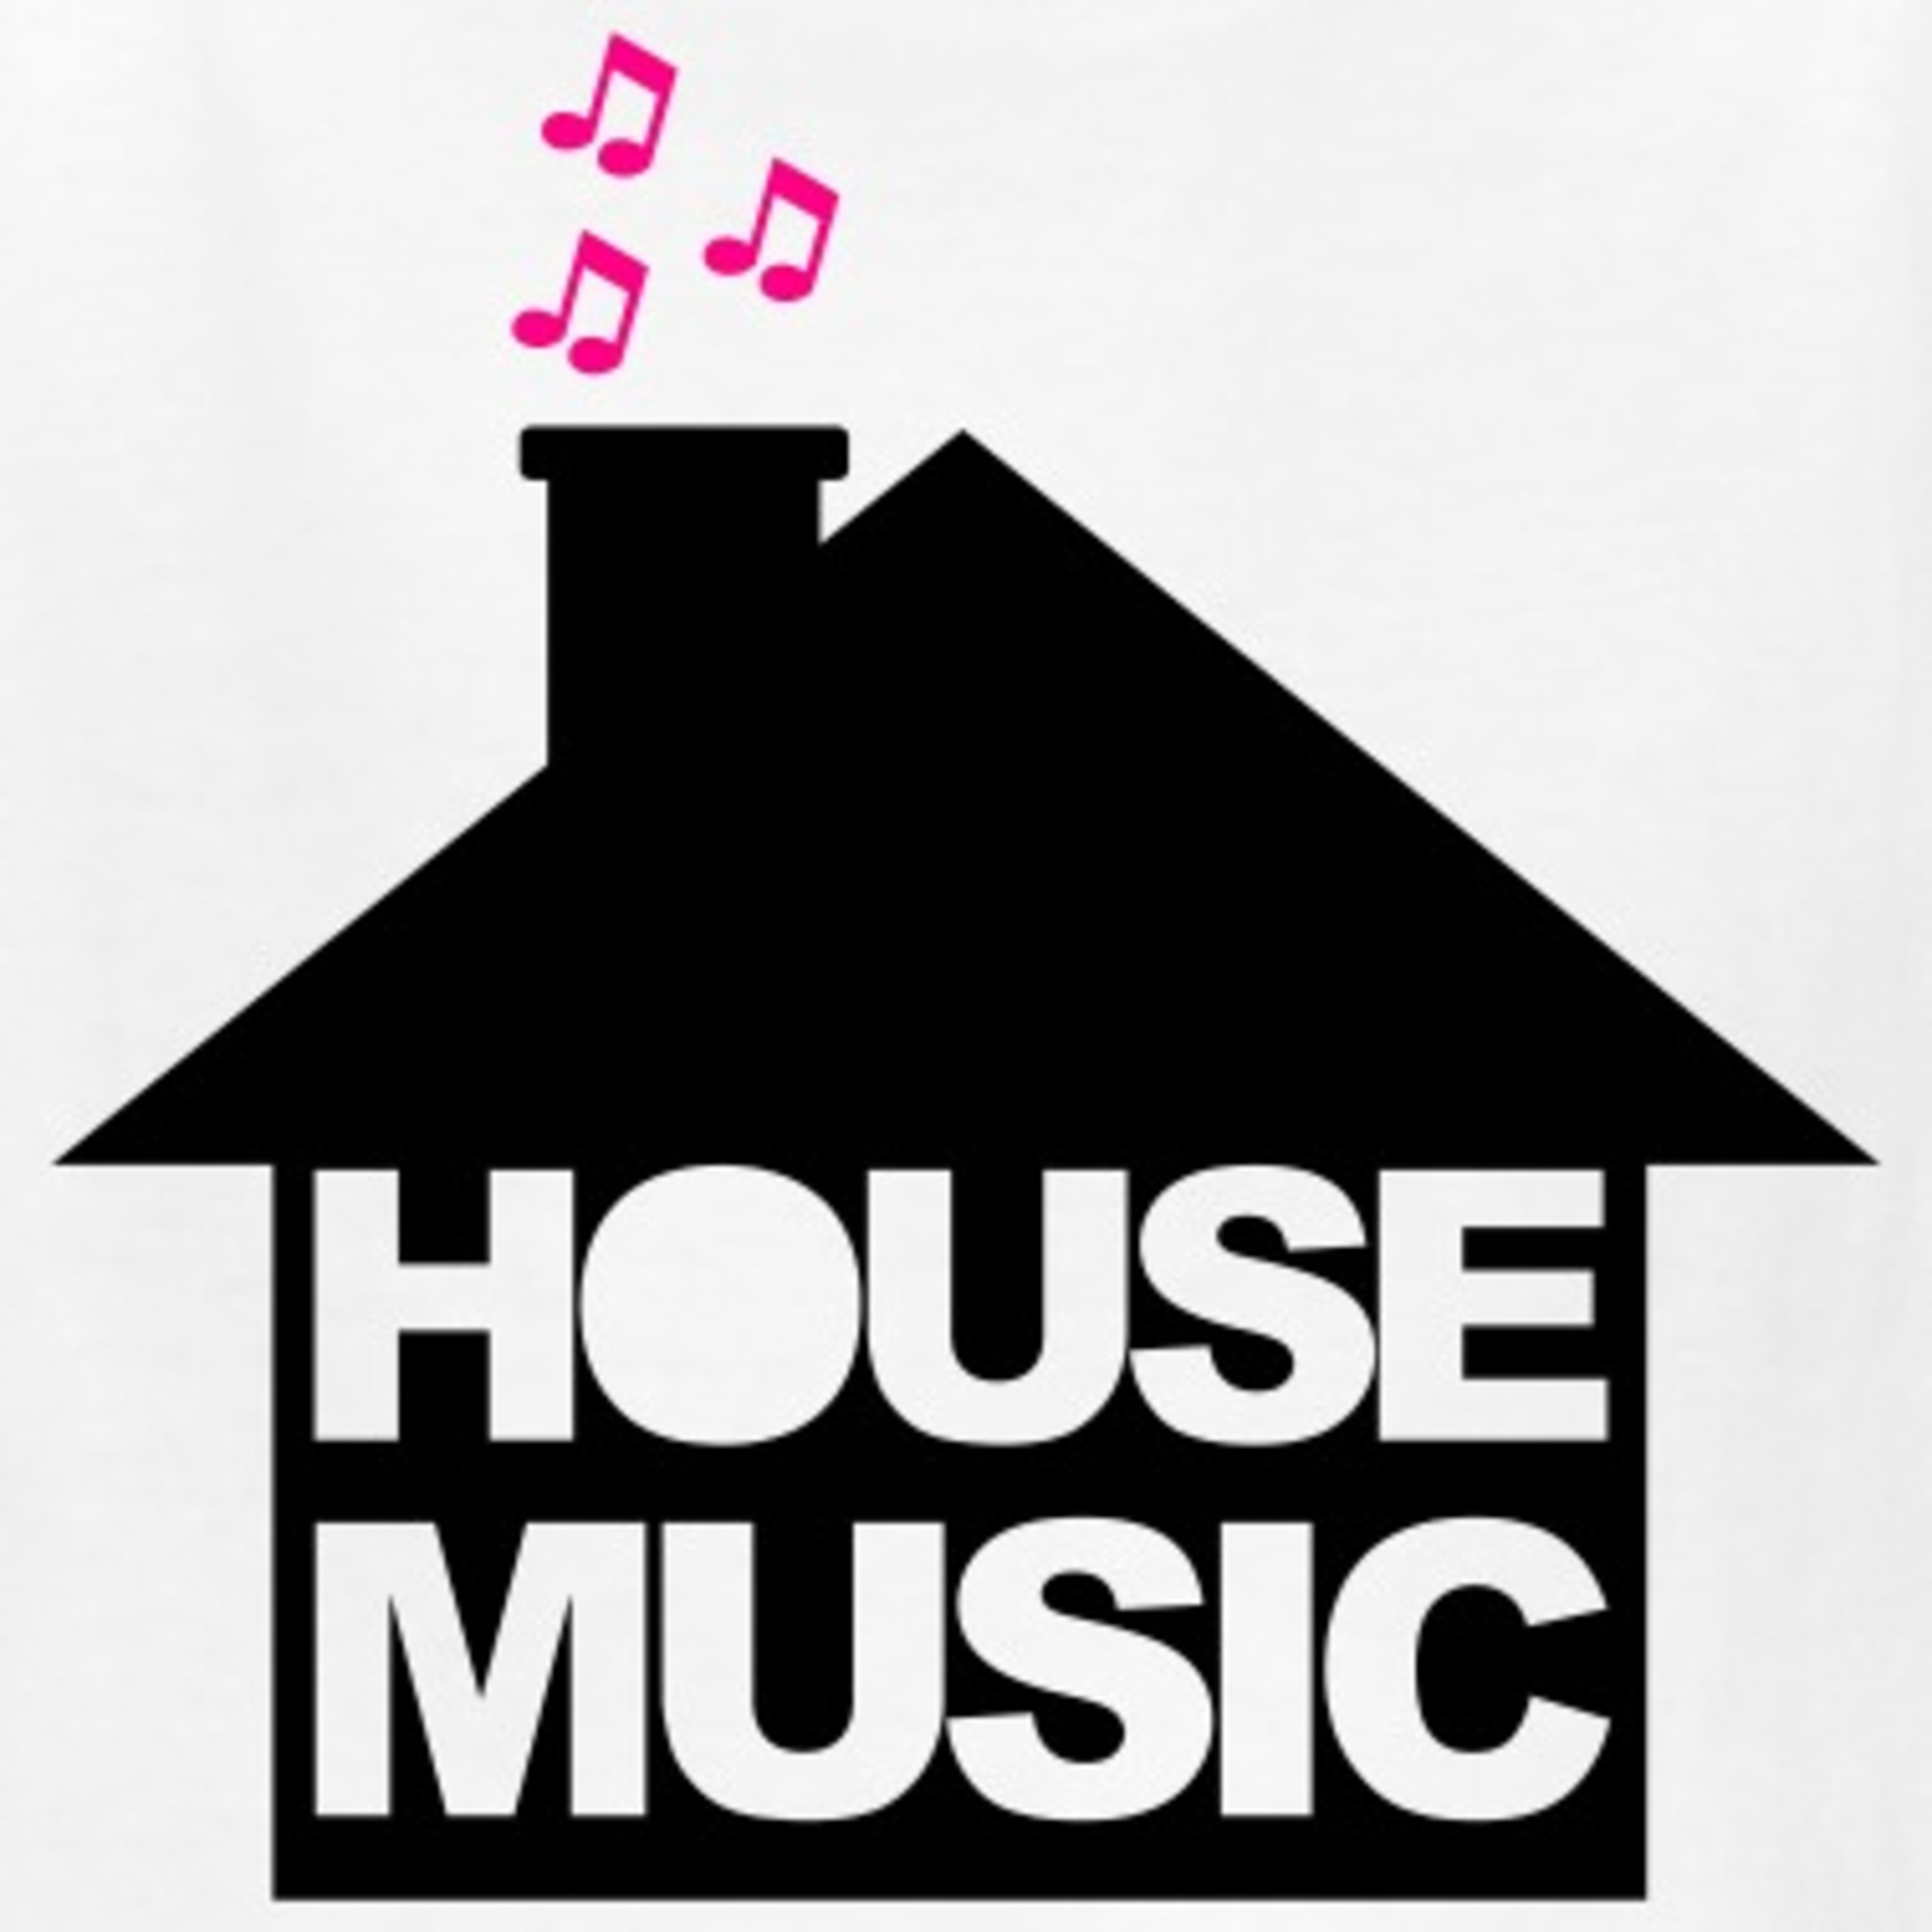 House music mp3. House надпись. Хаус логотип. House Music. Music House логотип.